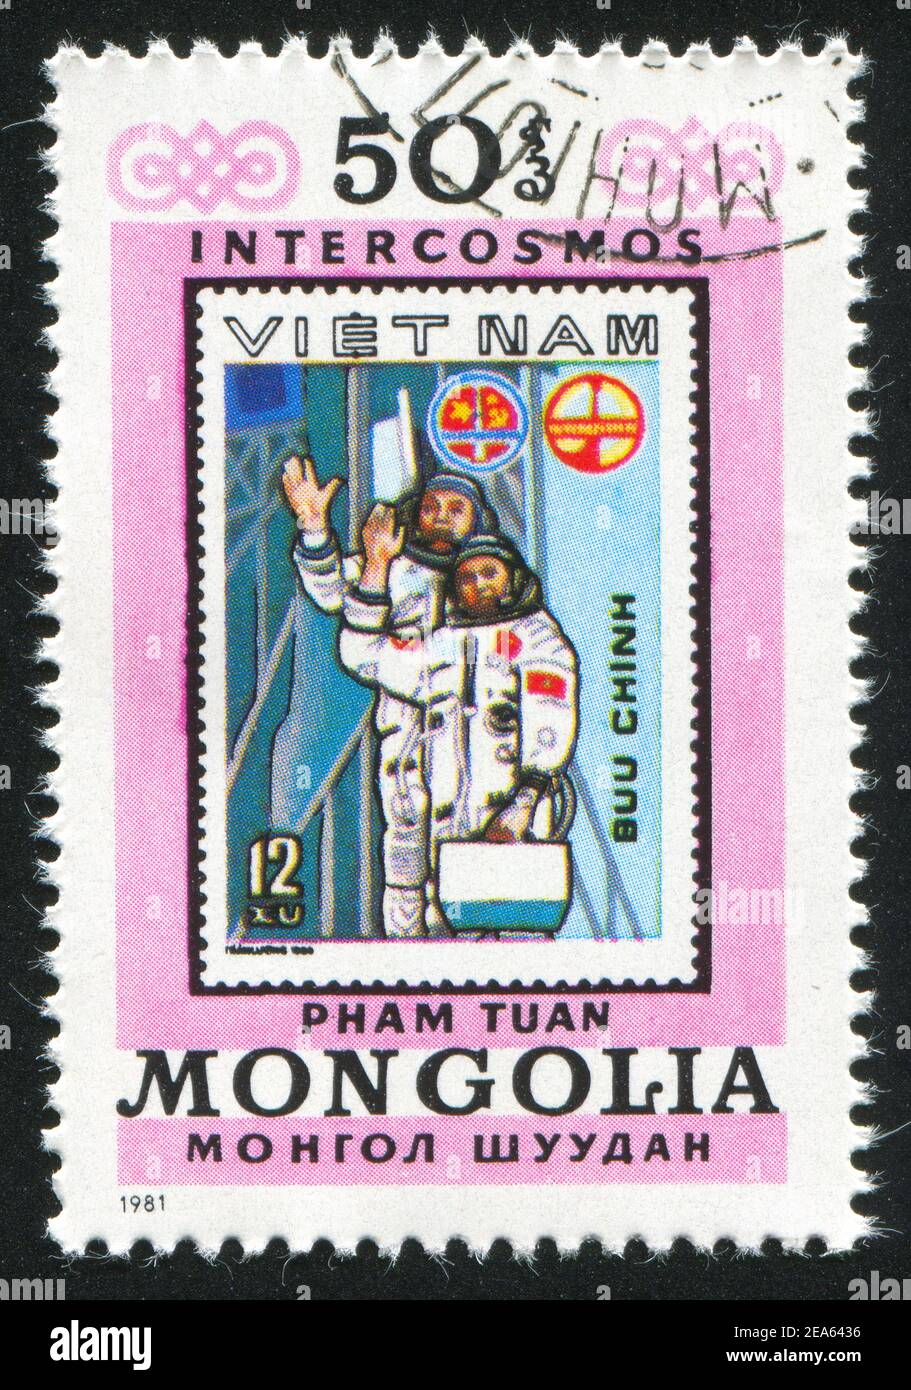 MONGOLIE - VERS 1981: Timbre imprimé par la Mongolie, montre les cosmonautes du Vietnam, vers 1981 Banque D'Images